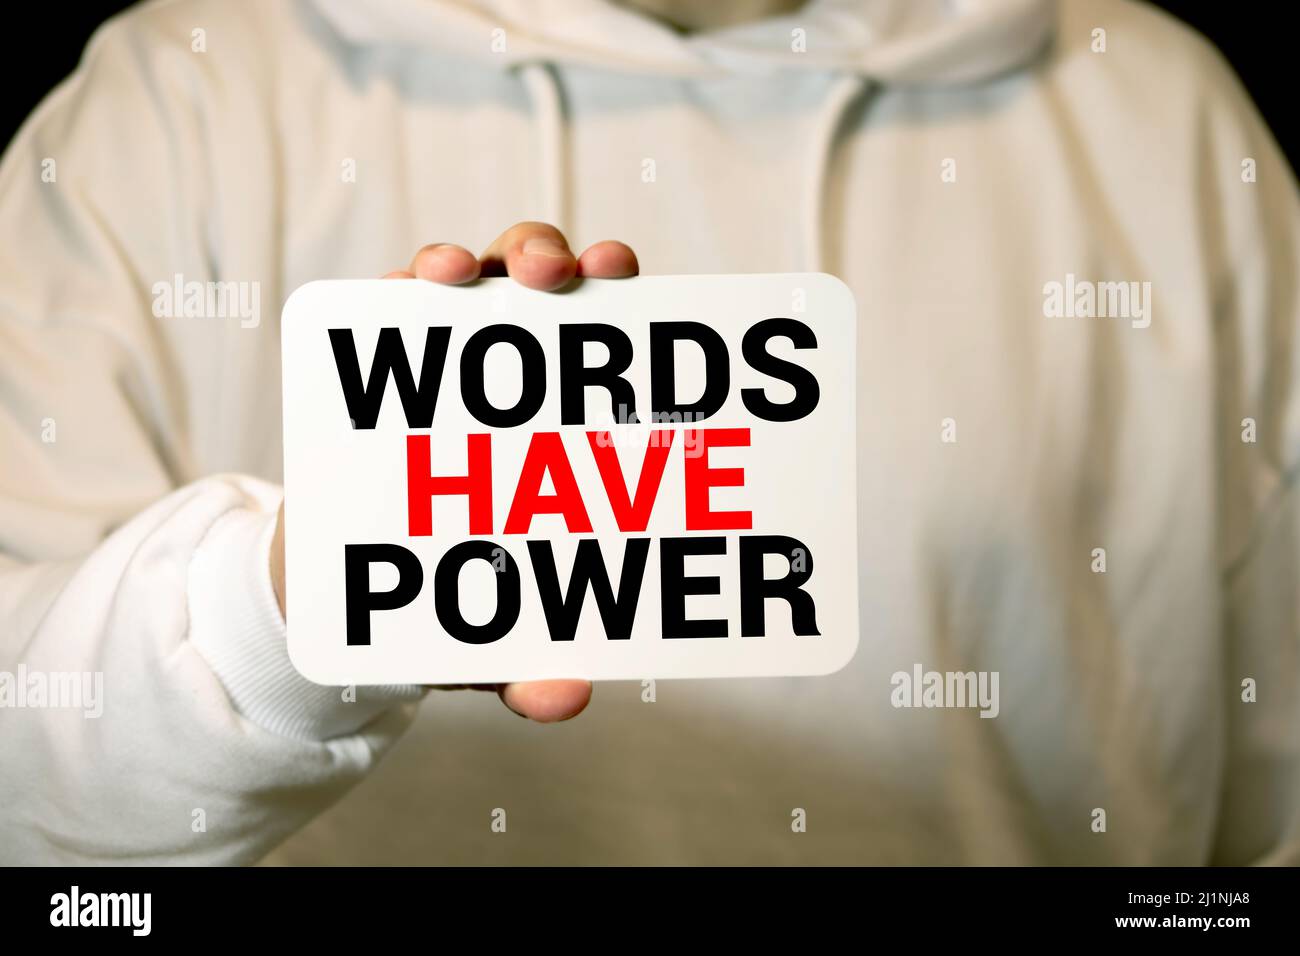 Die Wortwörter haben Power auf einen Schrott linierten Papiers gedruckt und auf eine rote Tafel geklebt Stockfoto